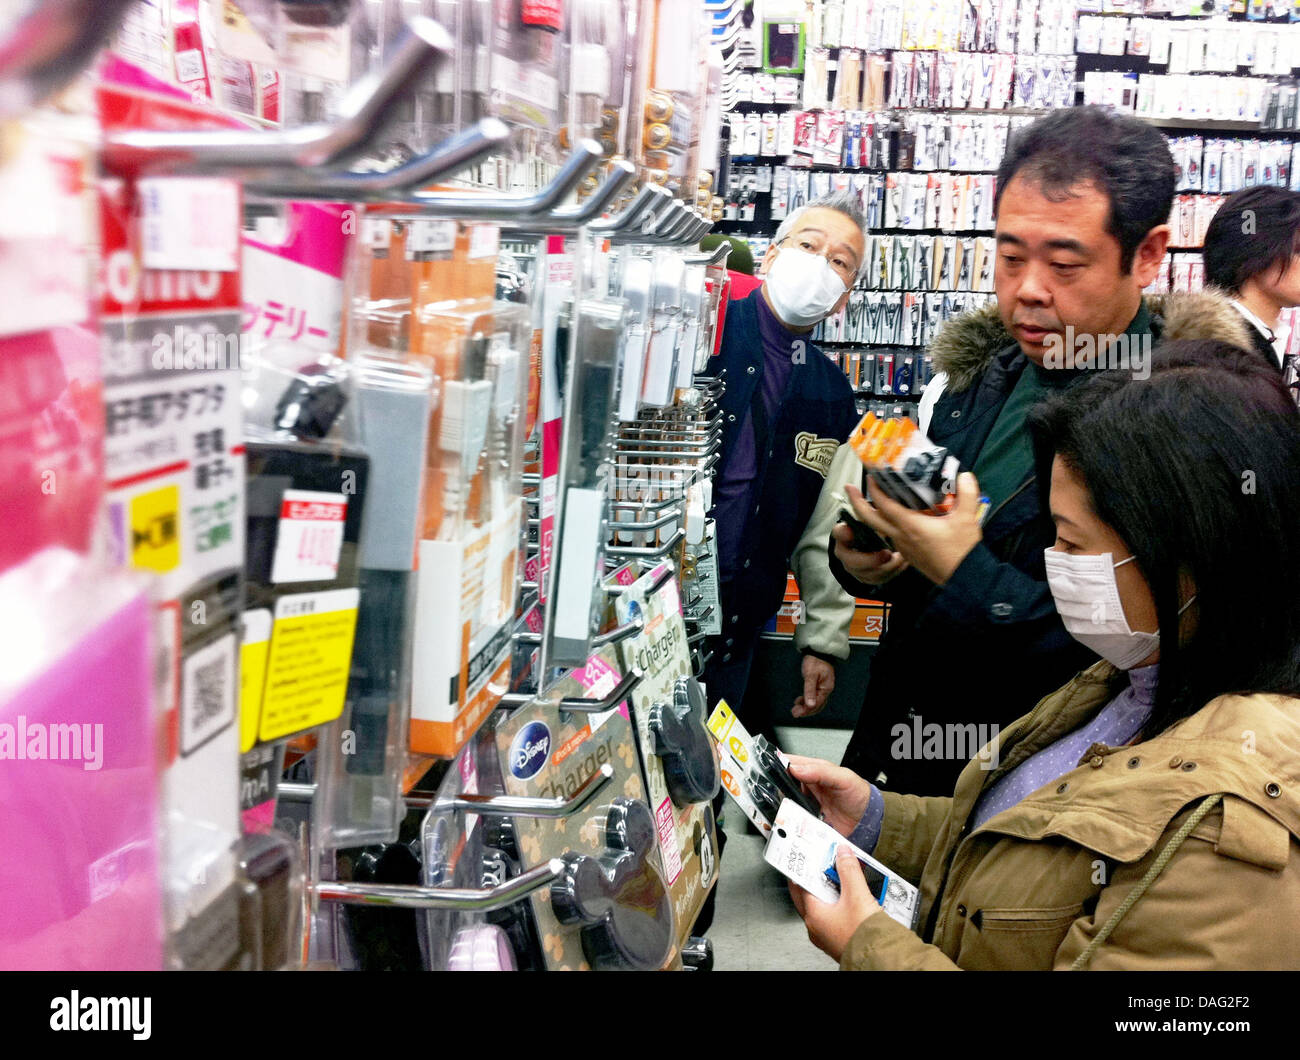 Japaner kaufen am Sonntag (13.03.2011) in Tokio in einem Geschäft für Elektronik batteriebetriebene Ladegeräte für Handys um auch bei einem längeren Stromausfall weiter telefonieren zu können. Ein schweres Erdbeben hatte am Freitag (11.03.2011) Japan erschüttert. Foto: Hannibal Stock Photo